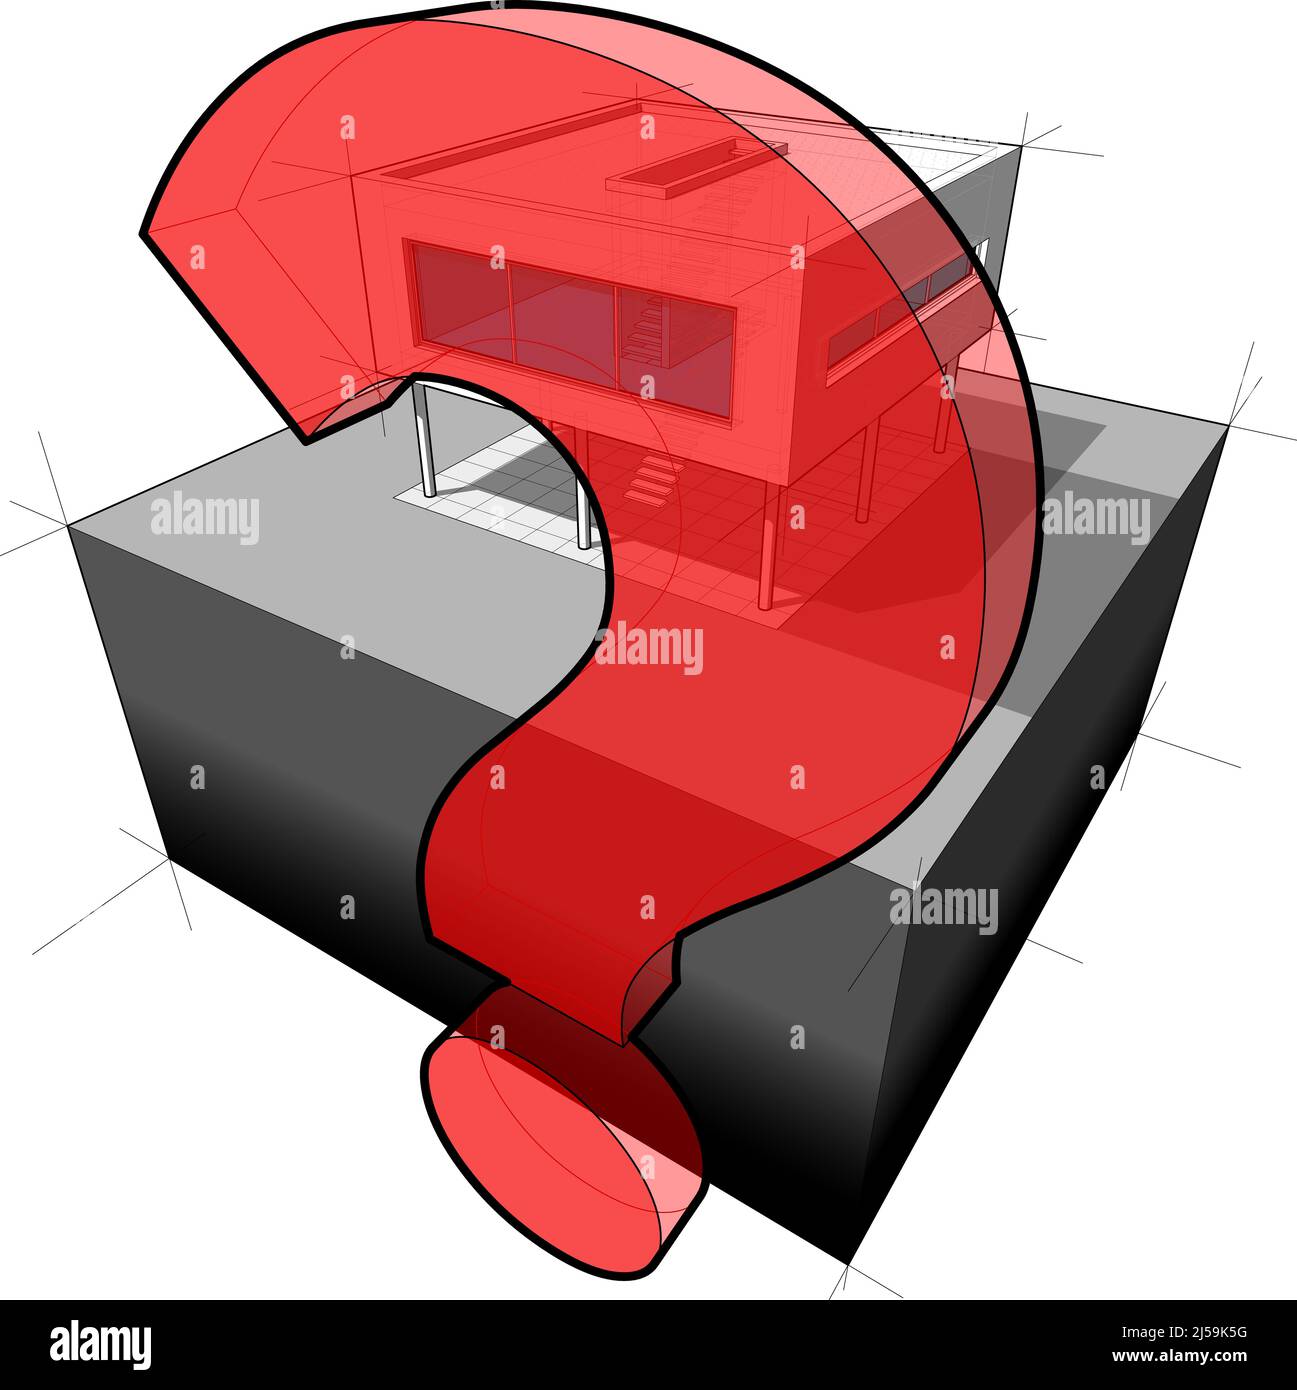 Diagramm eines modernen Hauses und Fragezeichen (ein weiteres Hausdiagramm aus der Sammlung, alle haben den gleichen Standpunkt/Winkel/Perspektive) Stockfoto